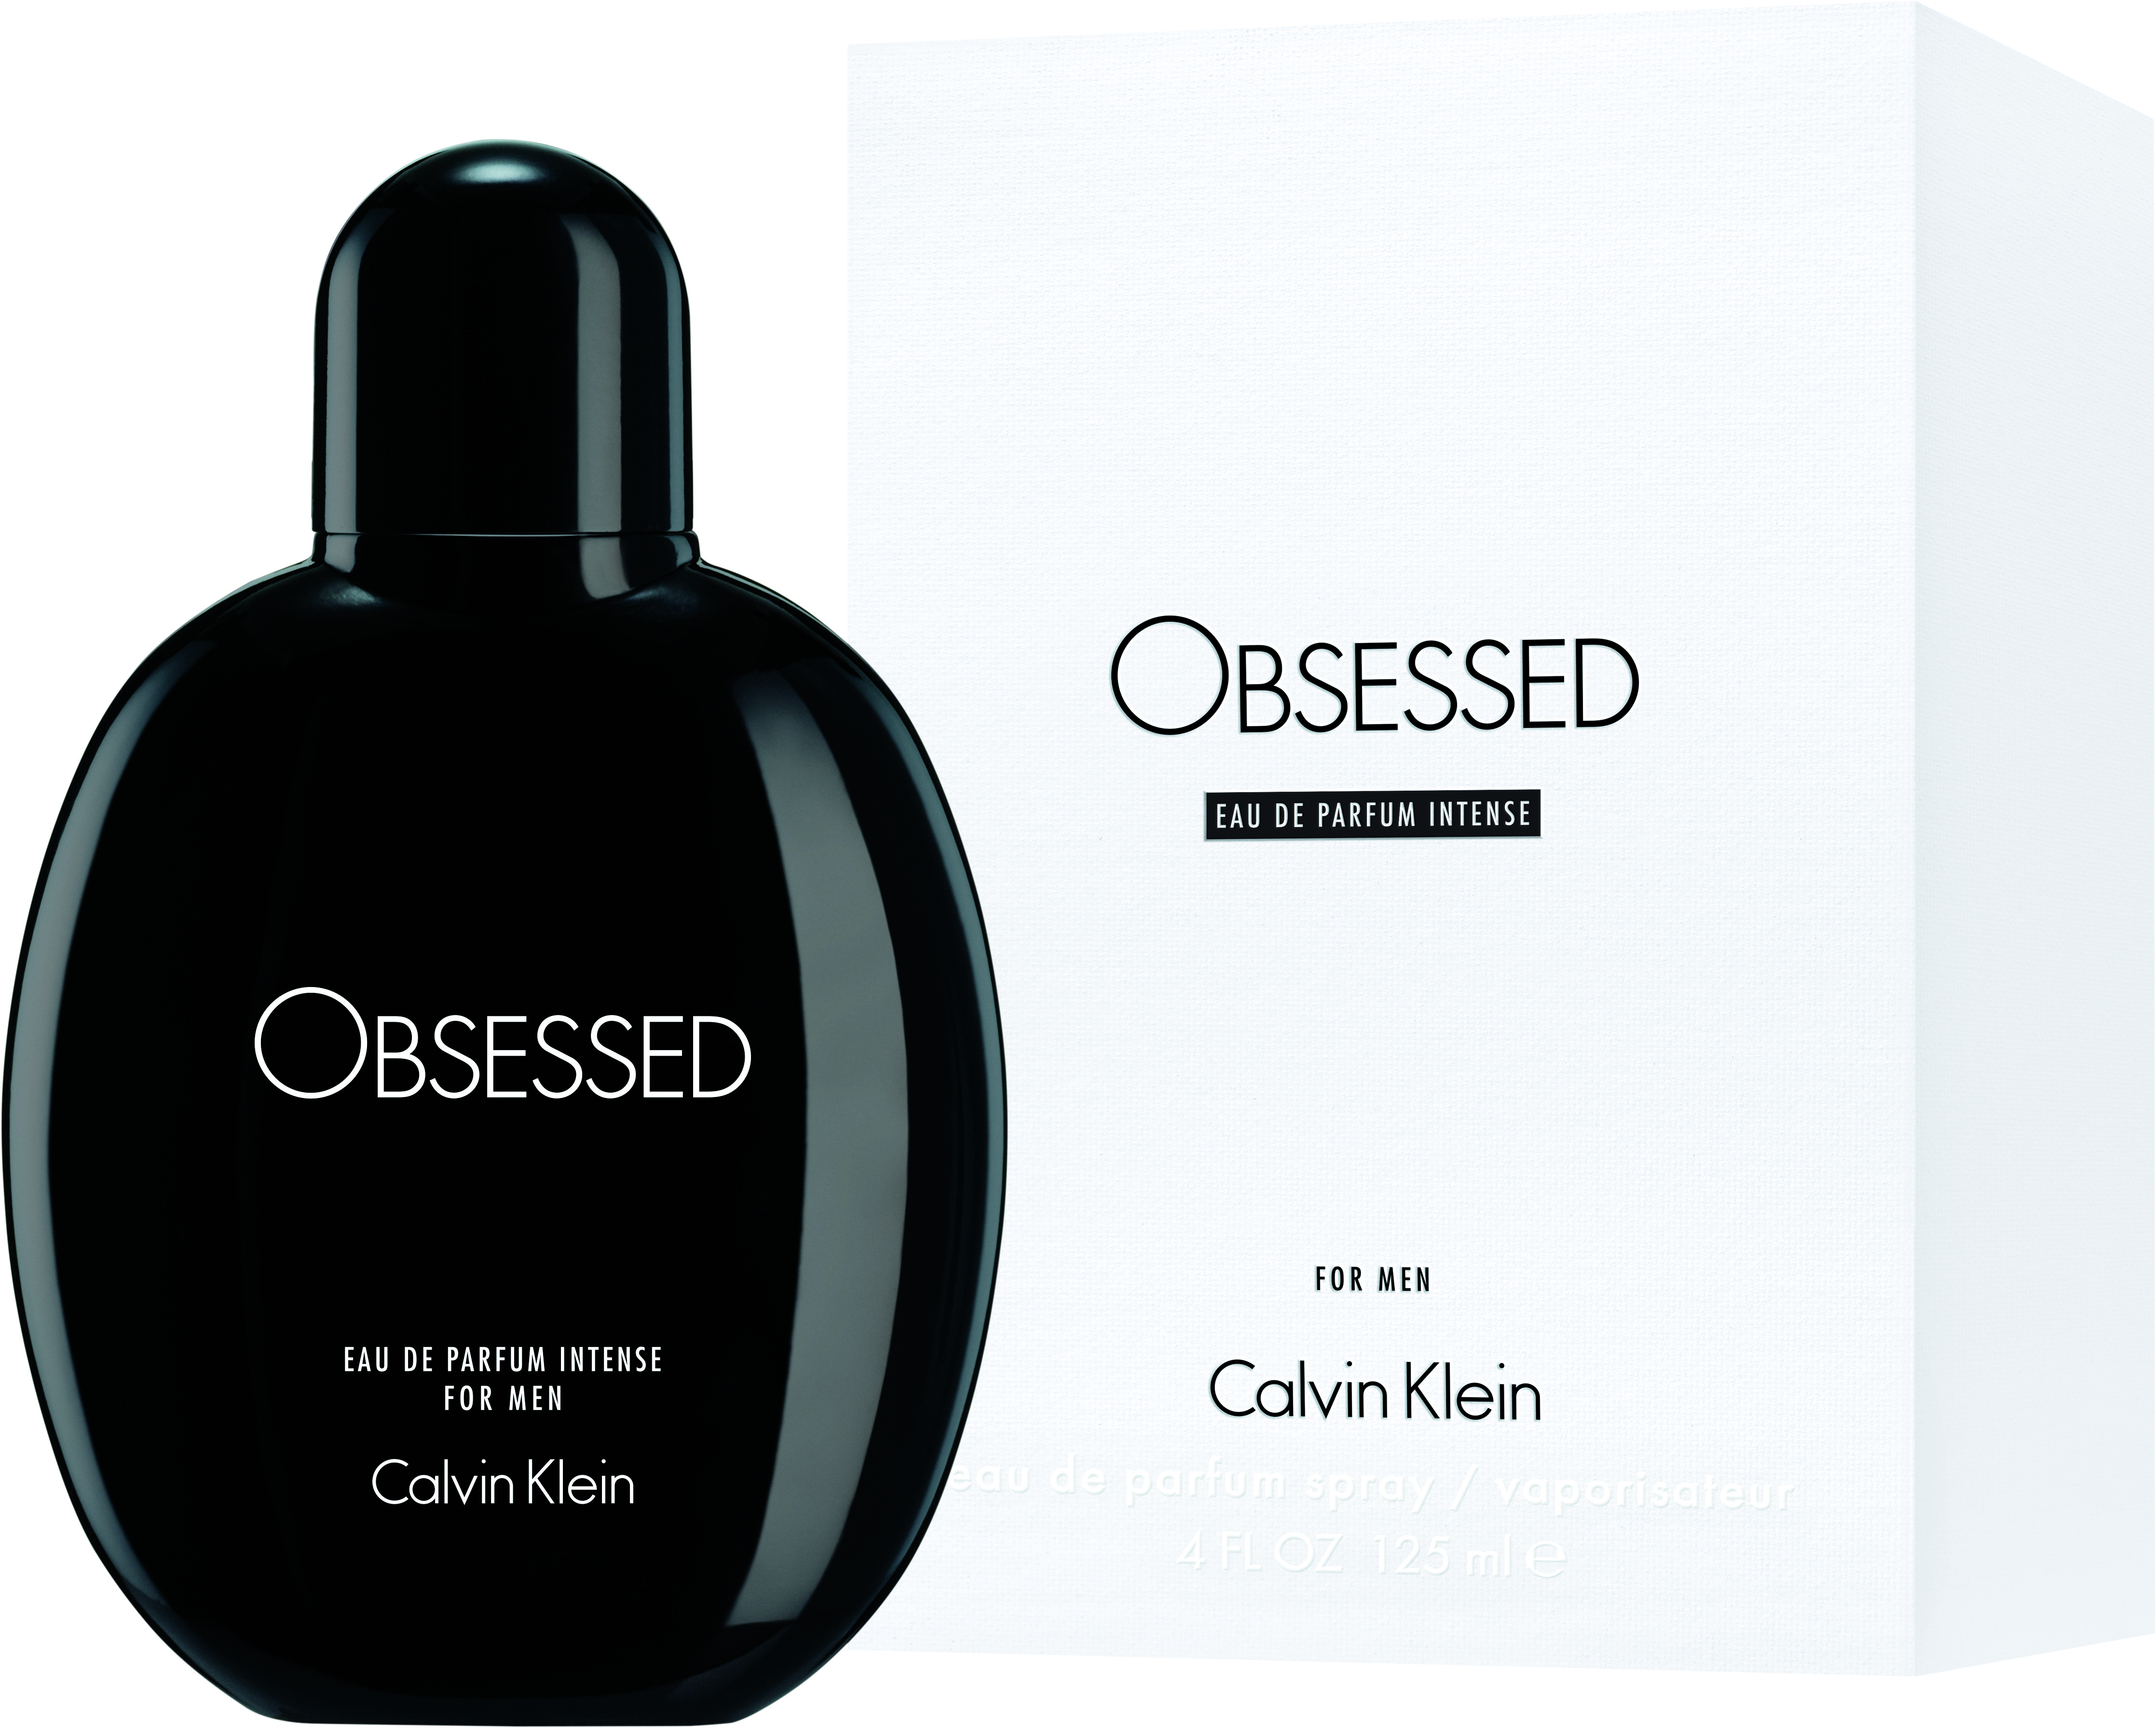 Calvin Klein's Obsessed for Men